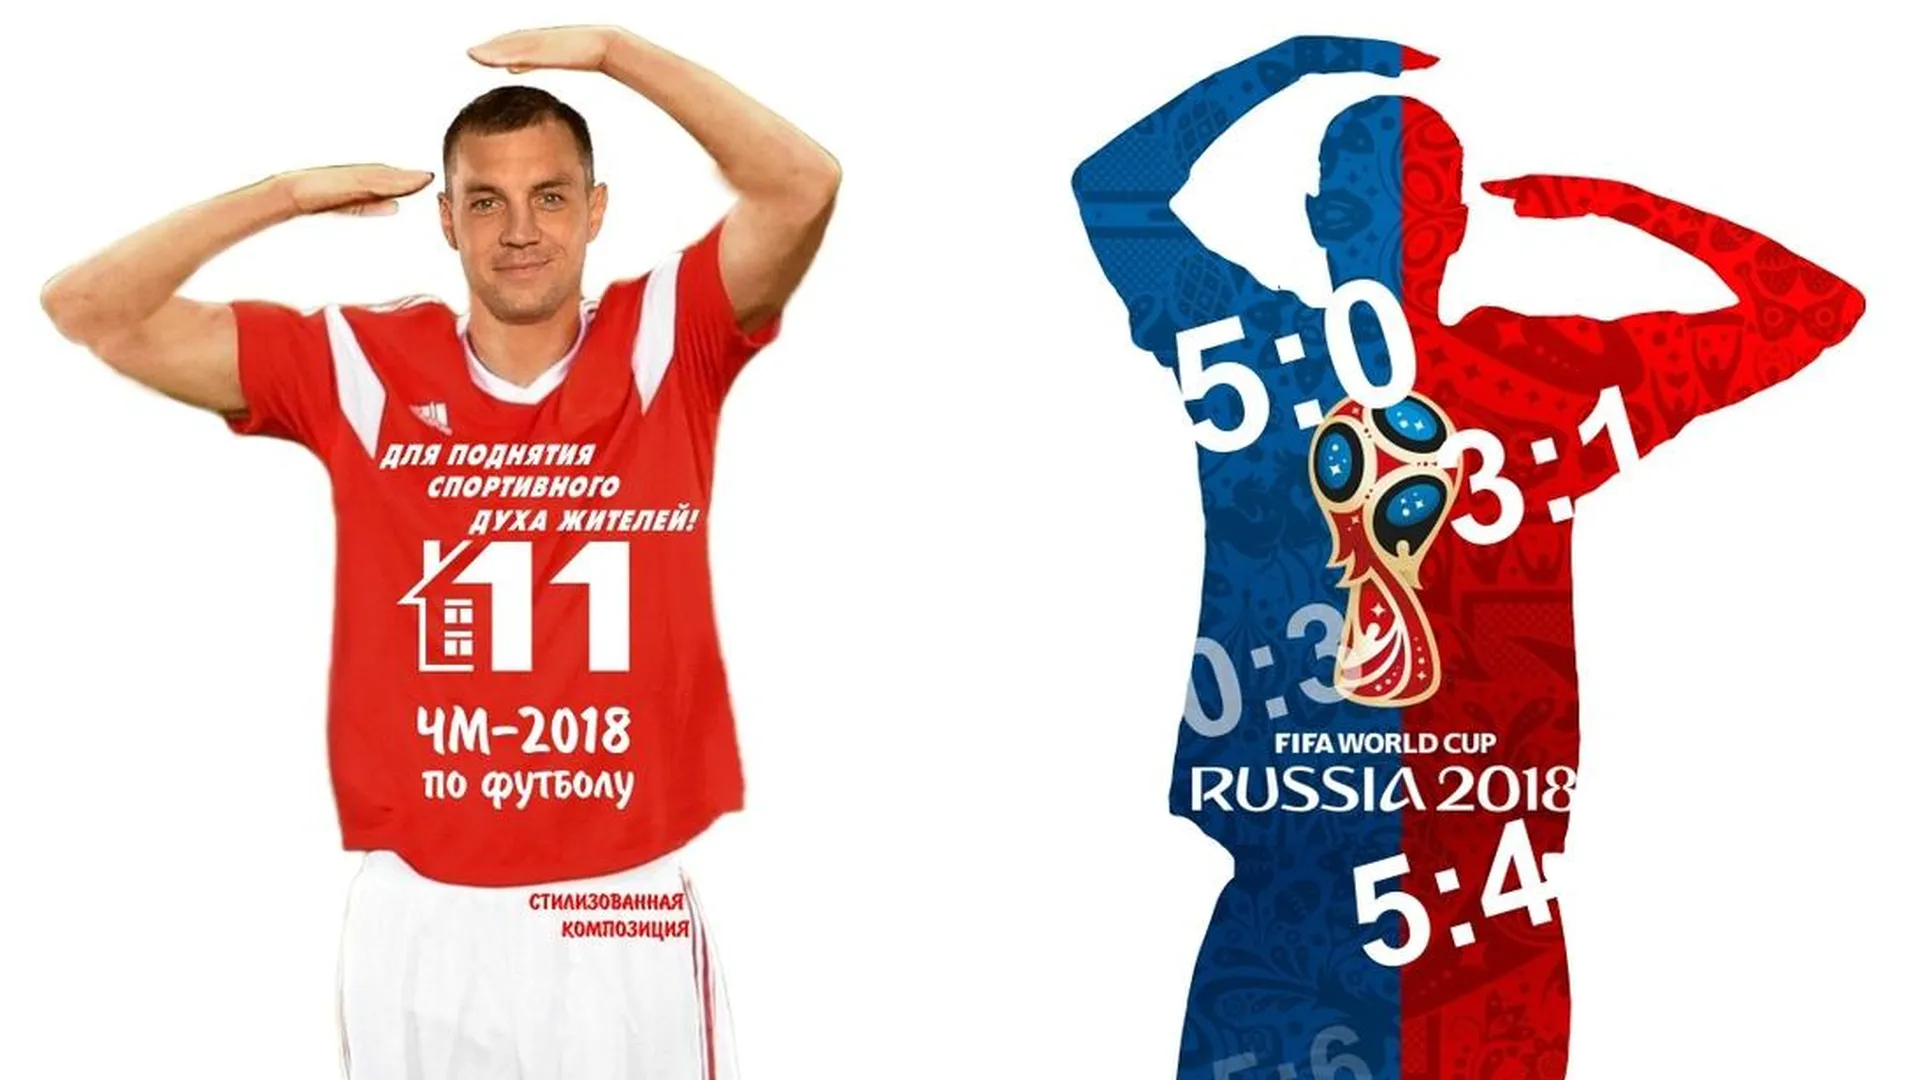 Активисты Подольска установят стилизованную фигуру к годовщине ЧМ‑2018 по футболу